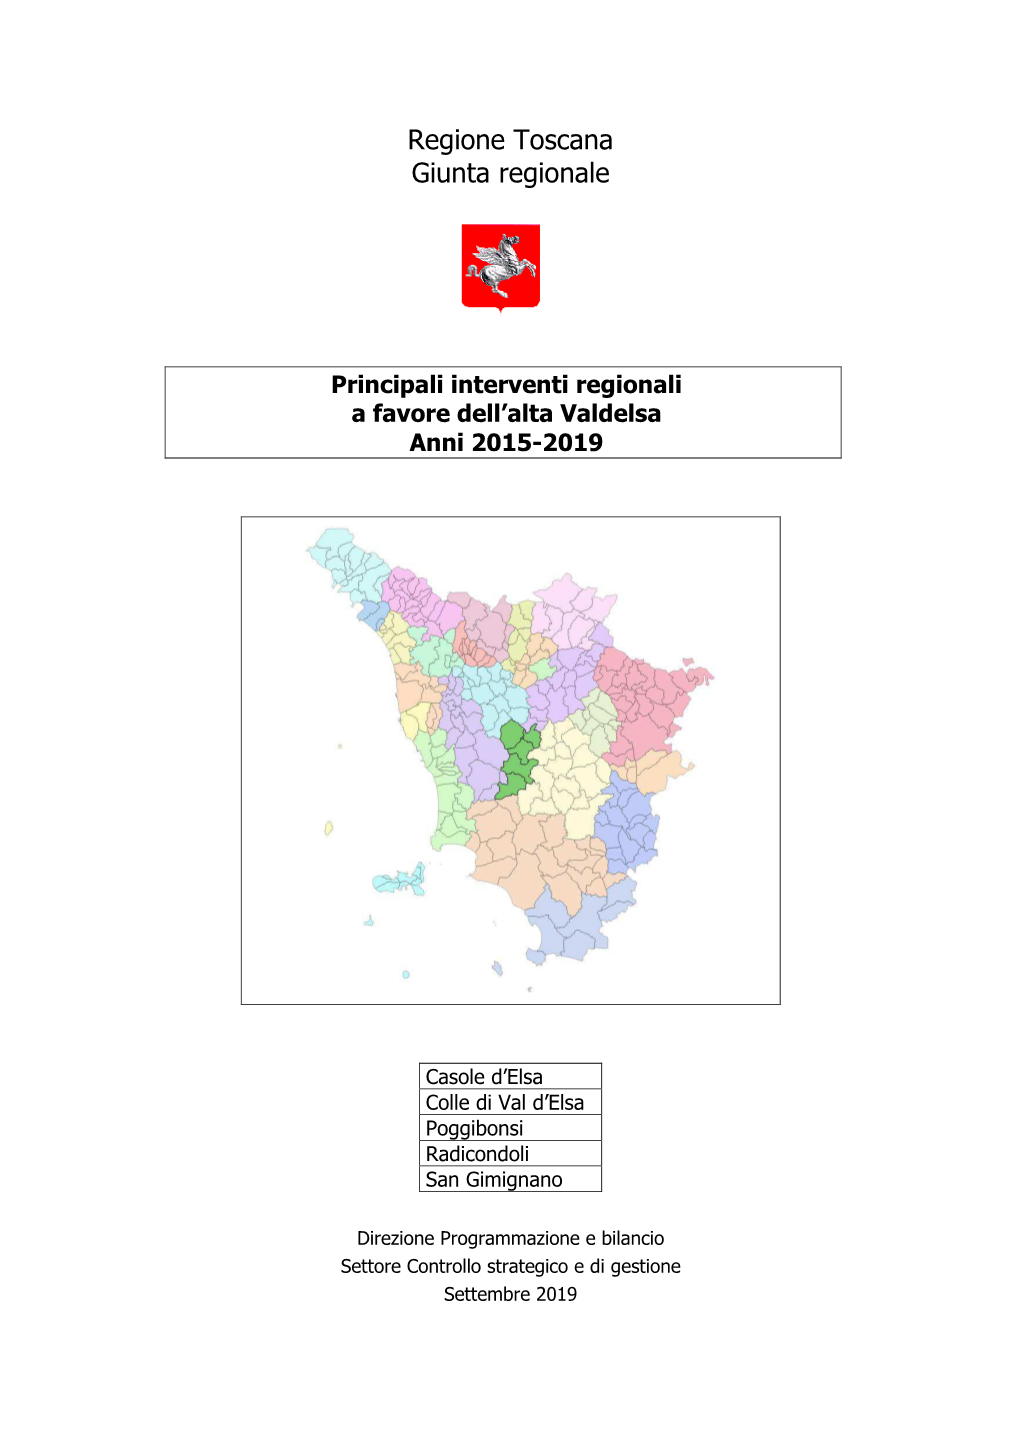 Principali Interventi Regionali a Favore Dell'alta Valdelsa Anni 2015-2019